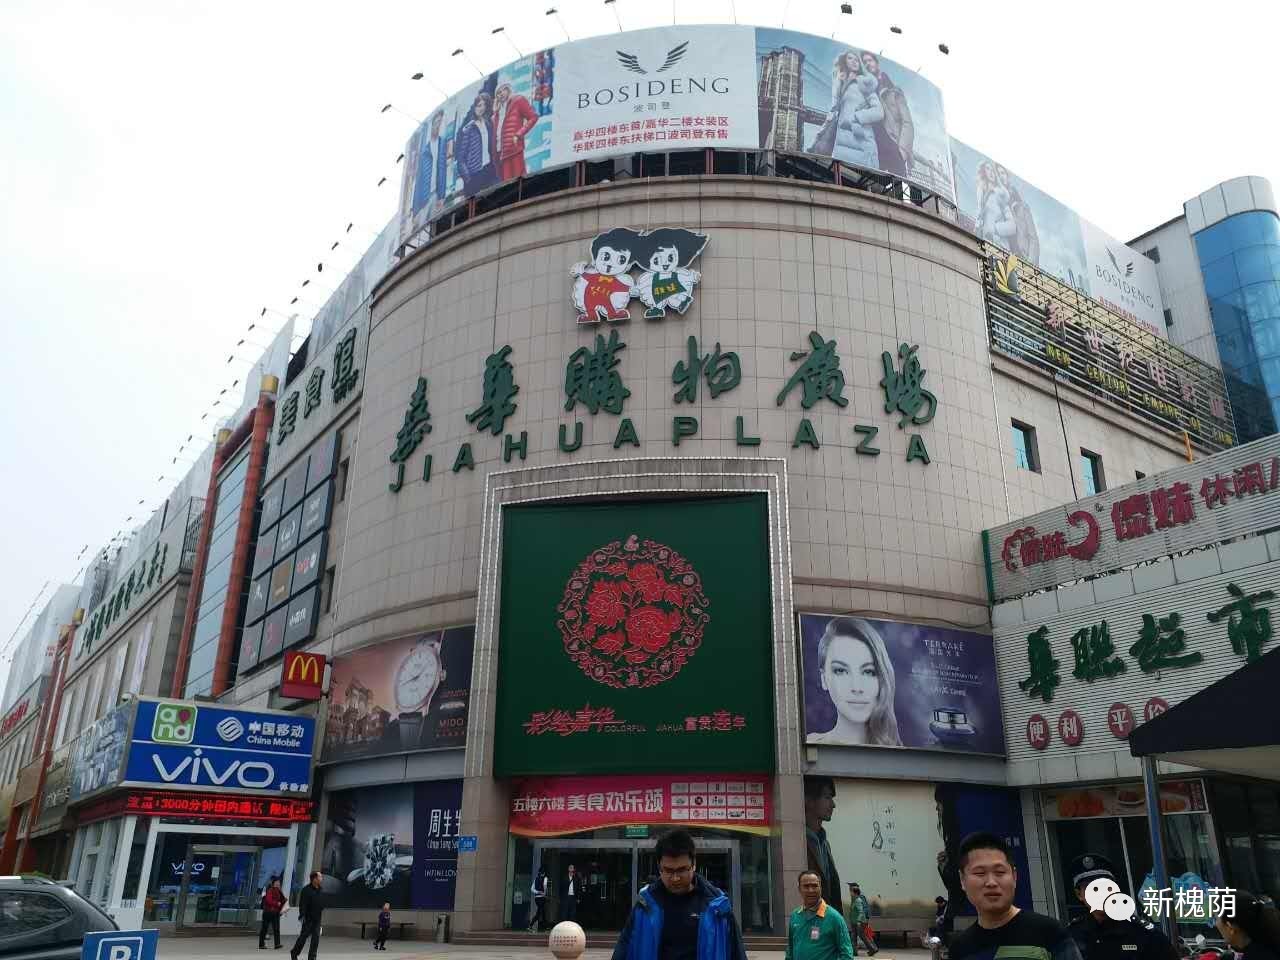 嘉华购物广场为济南华联商厦集团投资3亿元建立的以国际最先进的商业